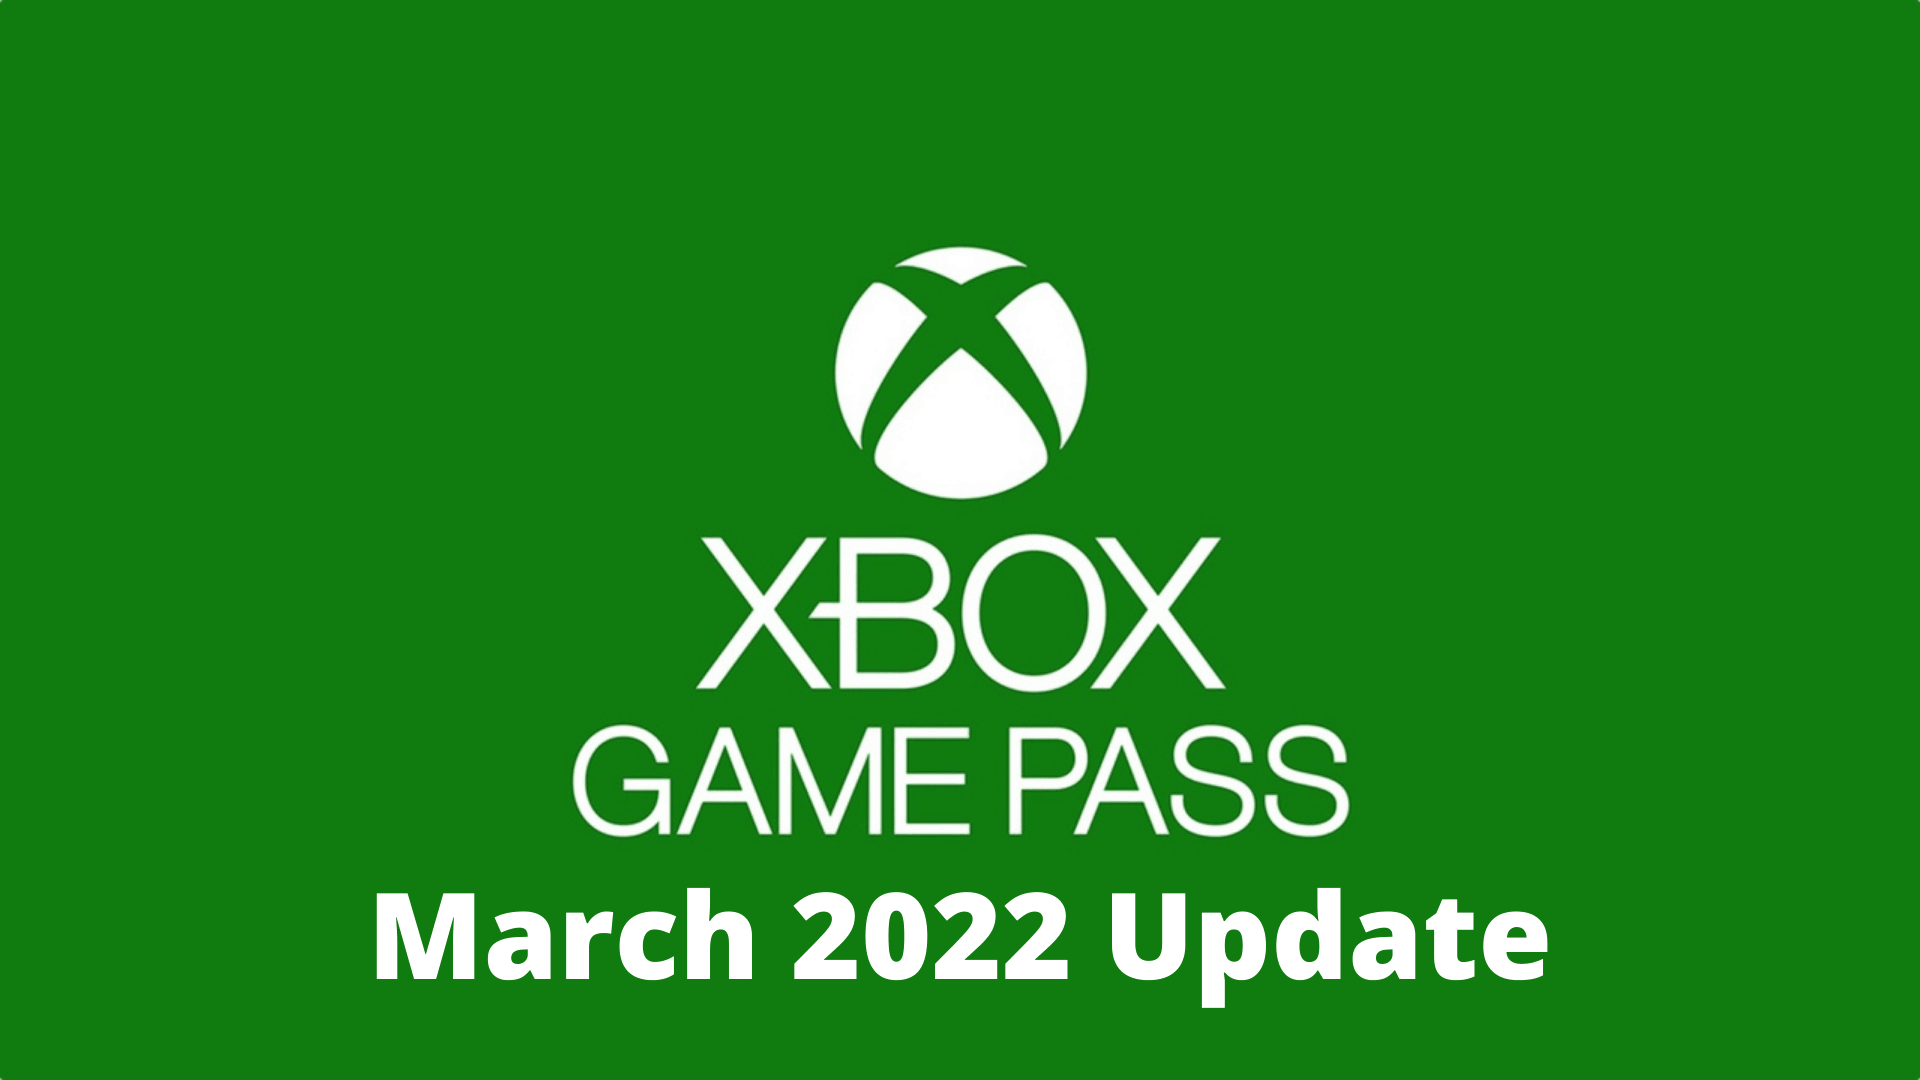 פורסמו המשחקים שיצורפו לספריית המשחקים של Xbox Game Pass Ultimate לחודש מרץ (3) - EXON - גיימינג ותוכנות